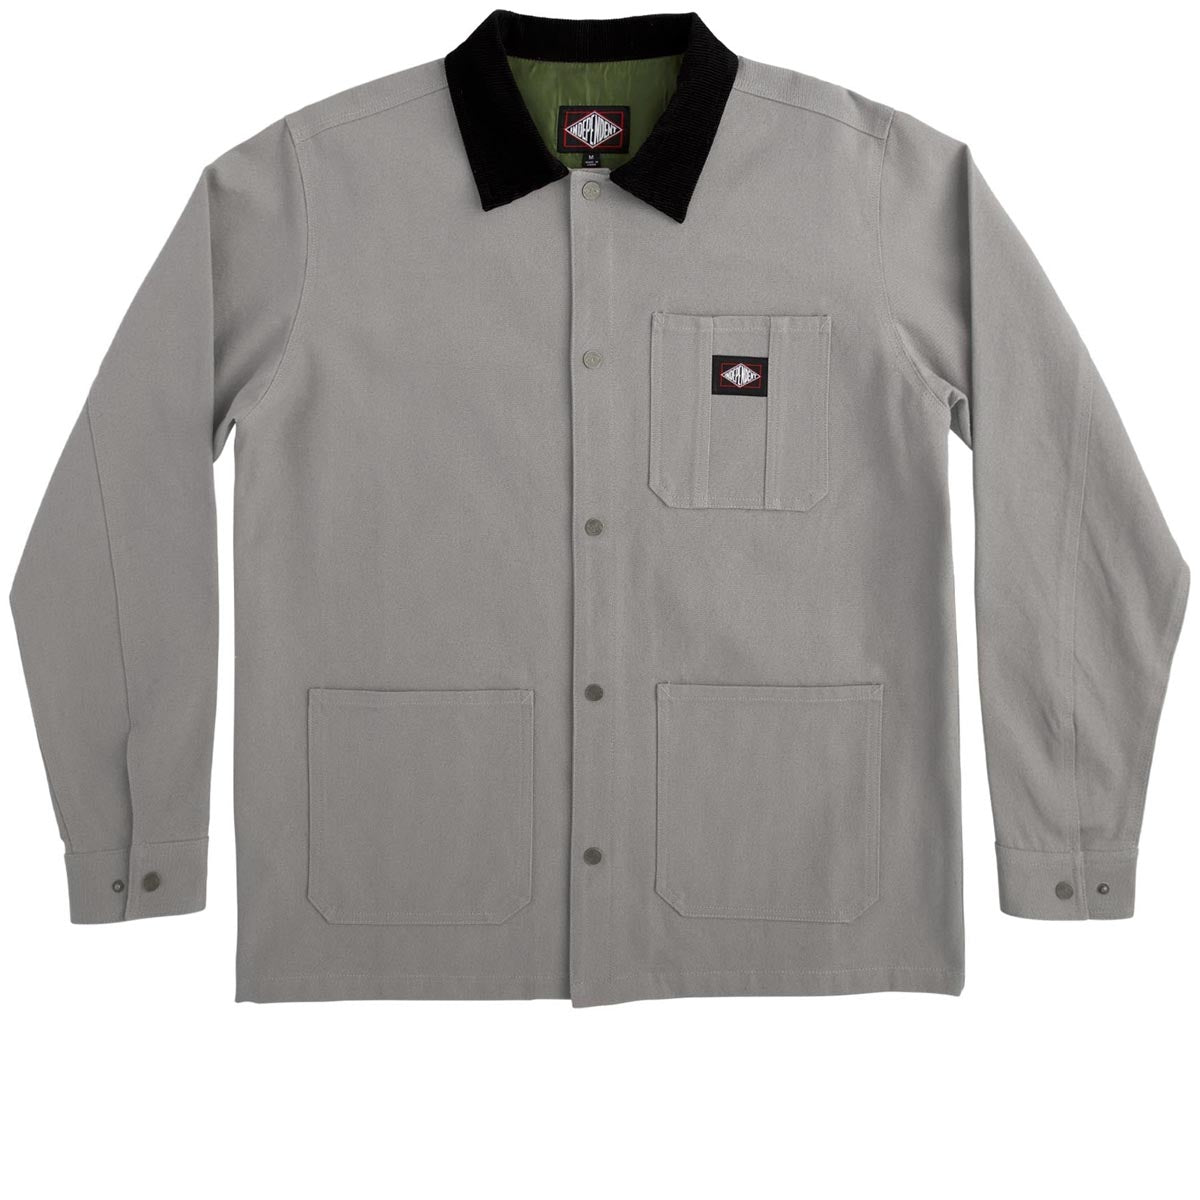 Independent Springer Chore Jacket - Grey image 1